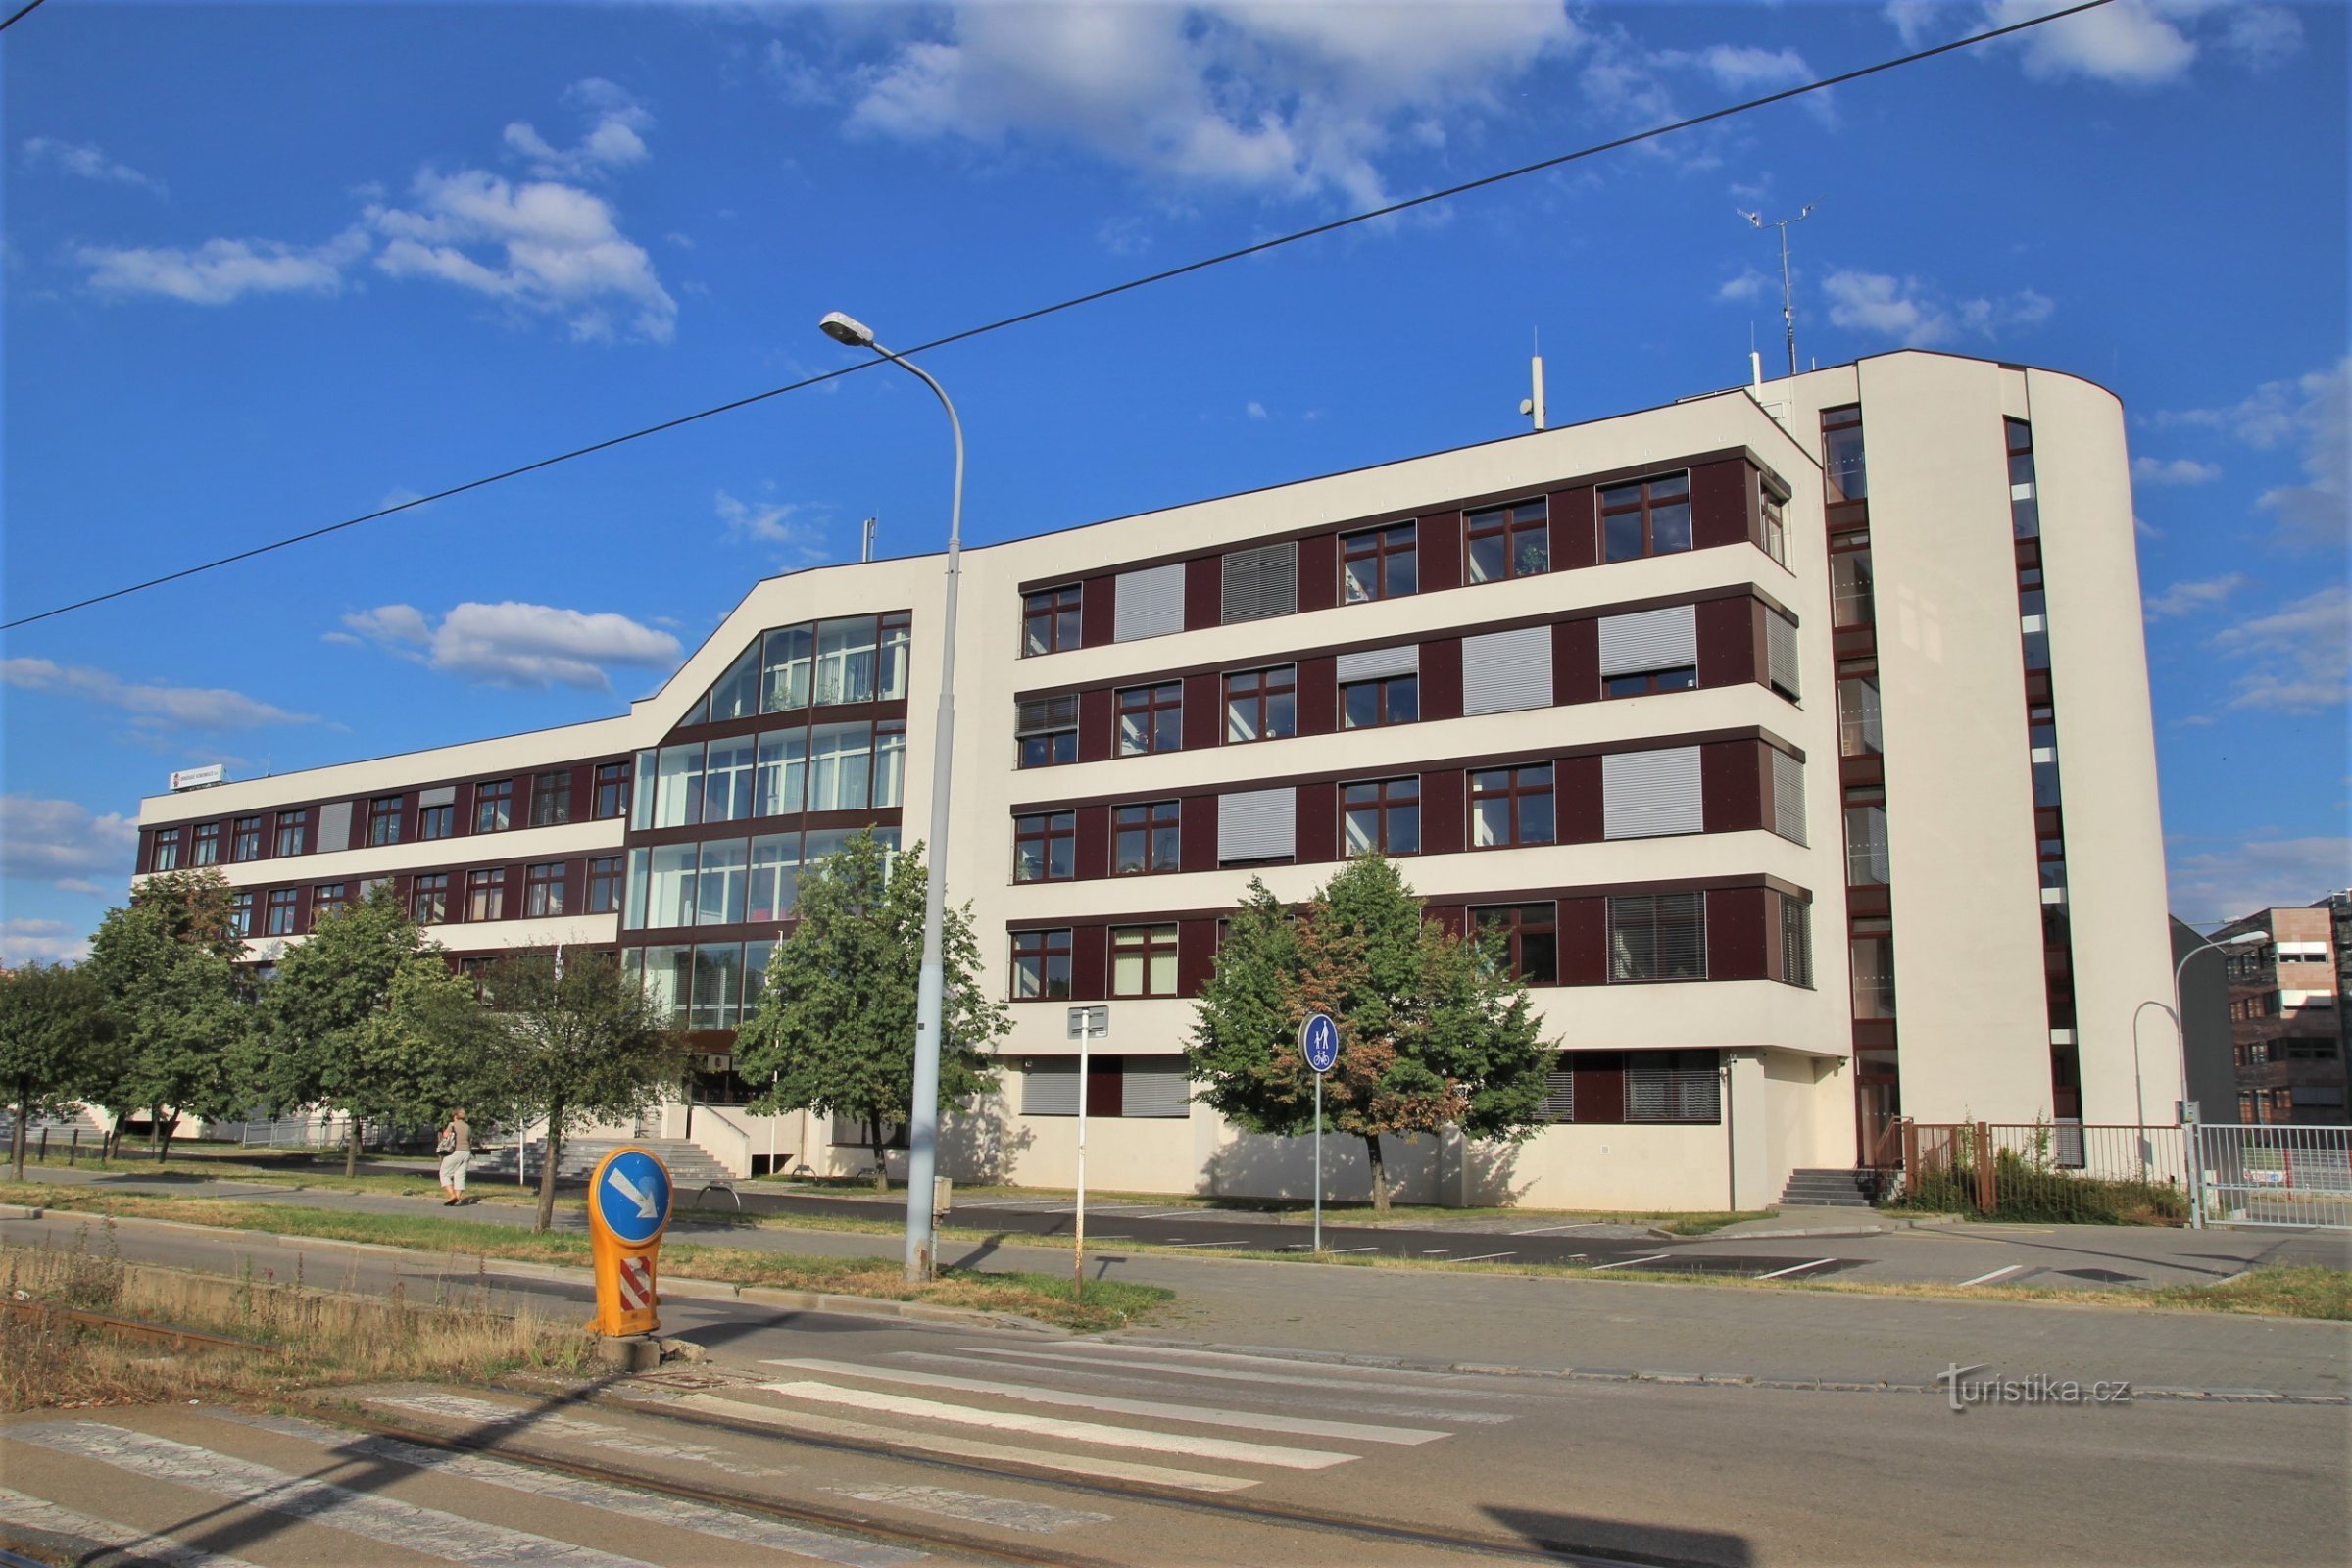 Edificio de comunicaciones de Brno